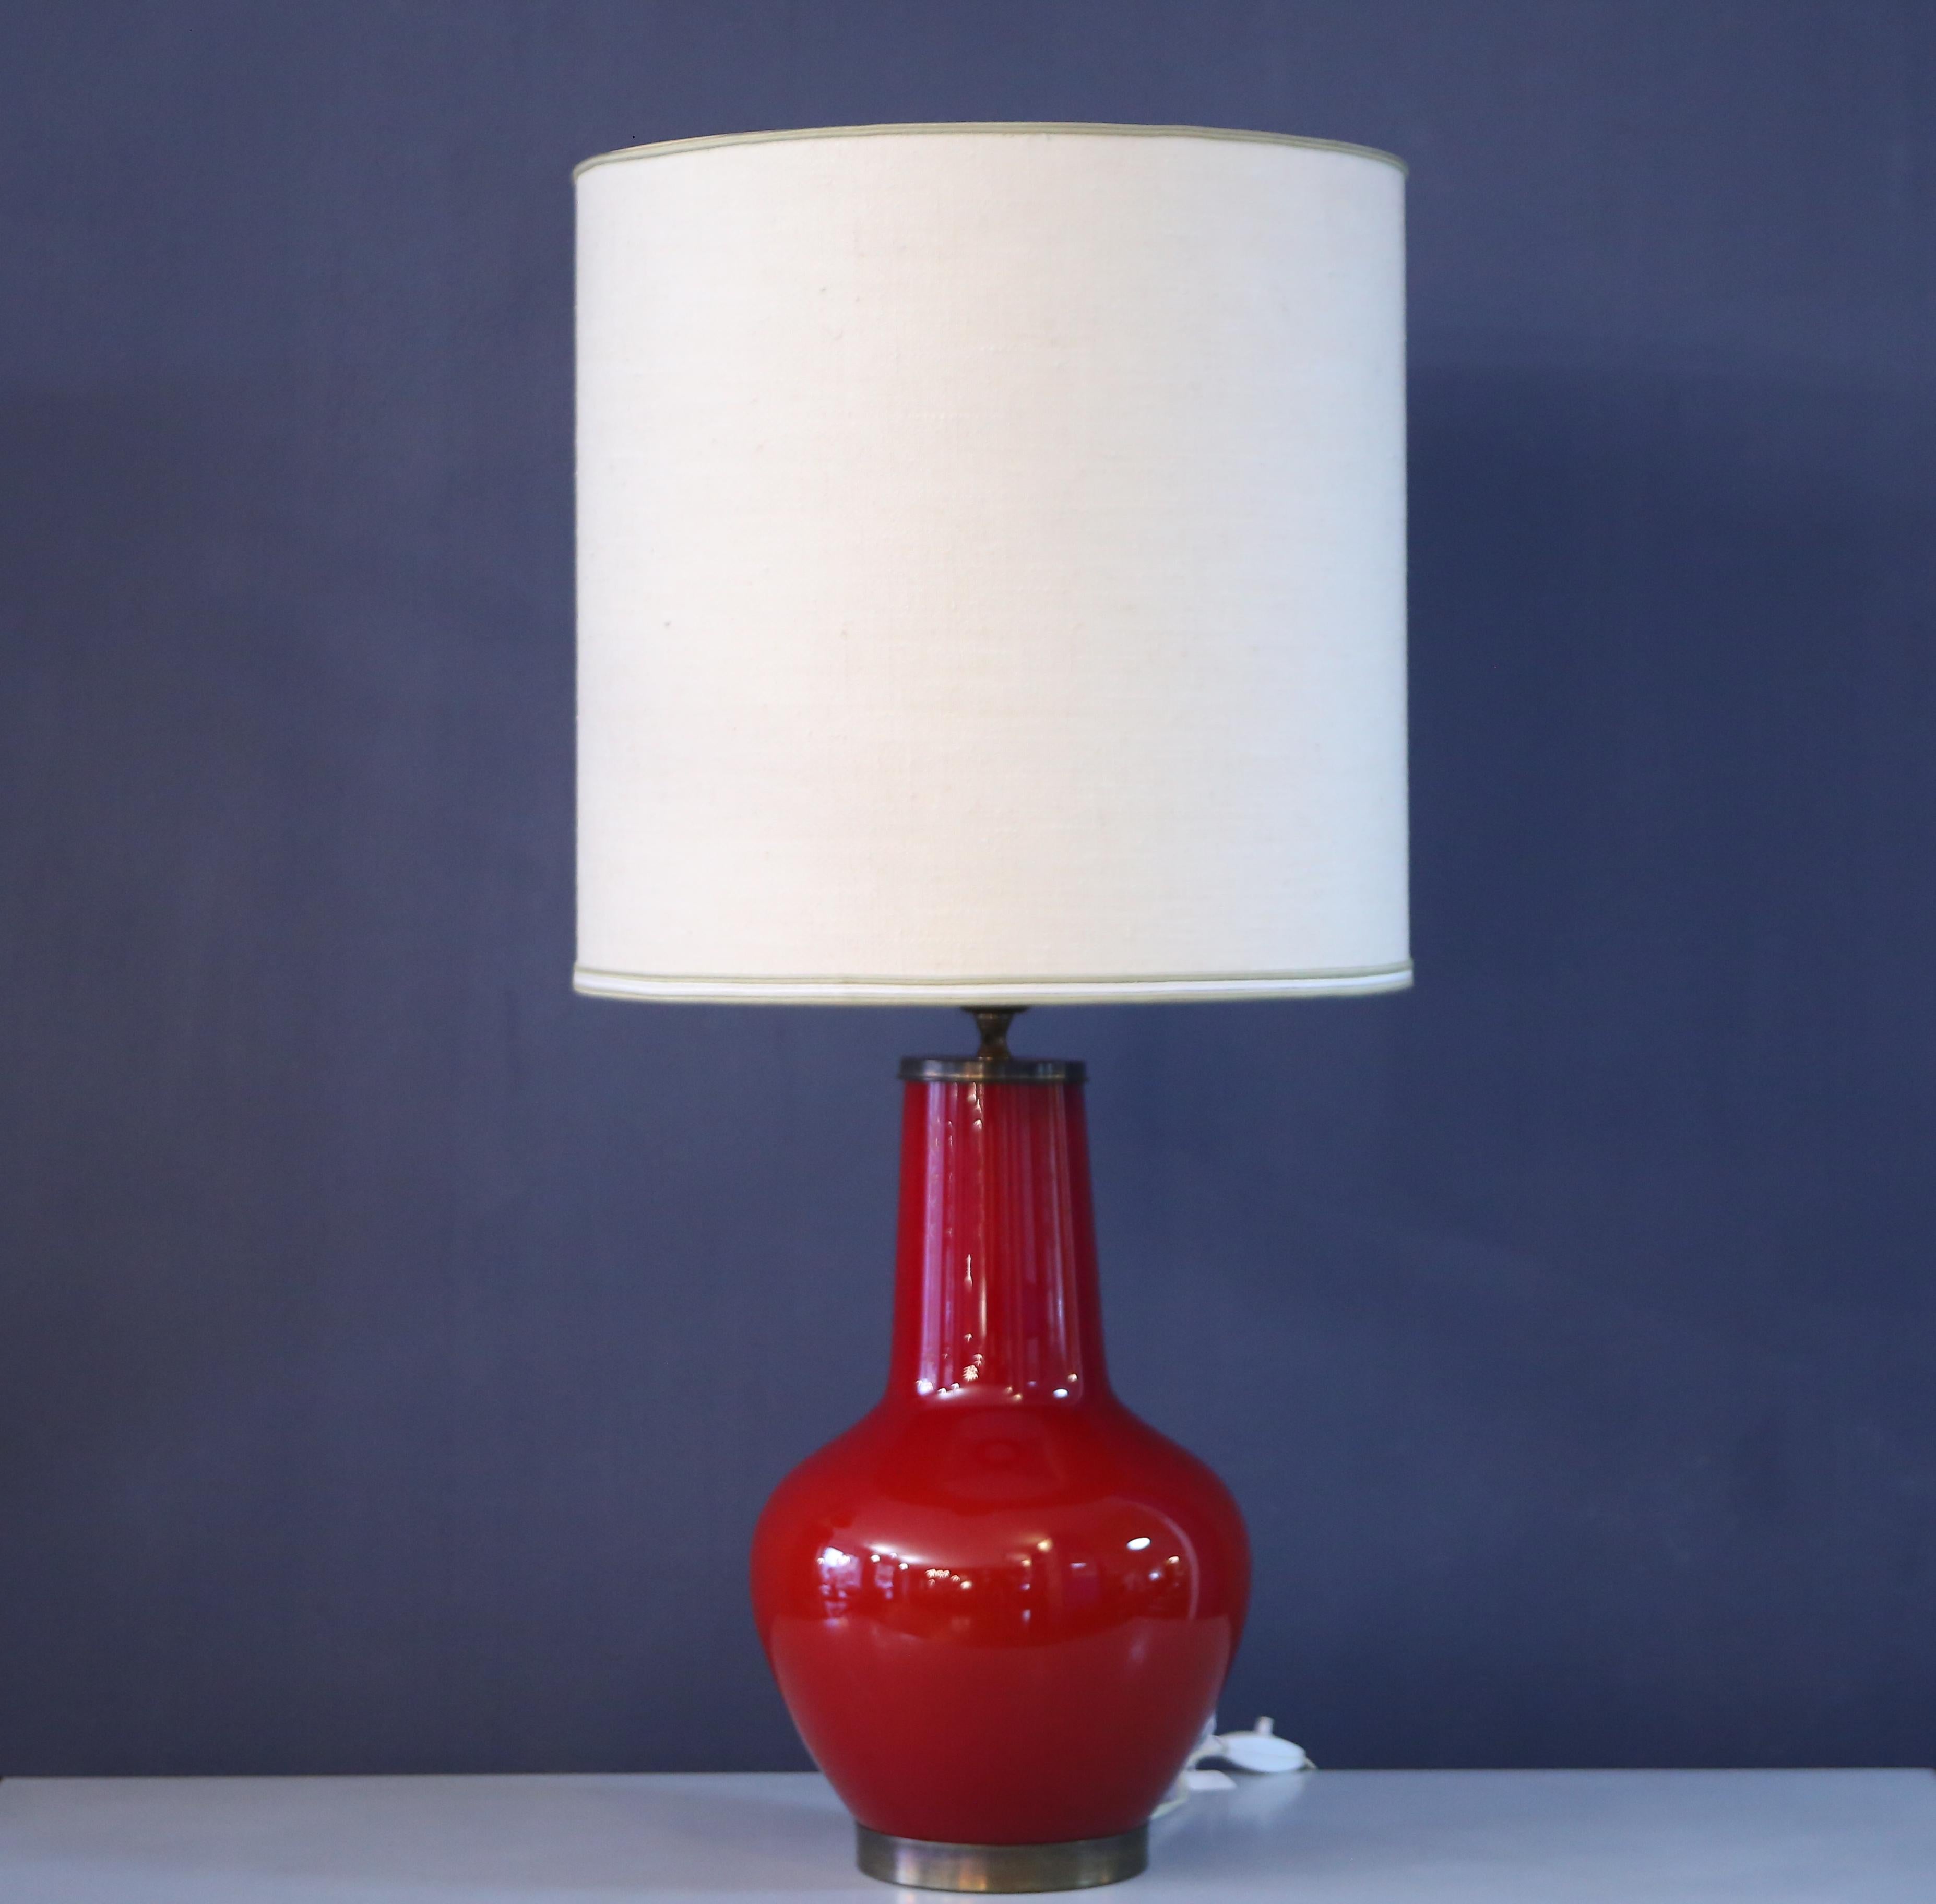 lampe de table produite par la société stilnovo dans les années 1950. Cette lampe est fabriquée en verre stratifié et convient parfaitement aux espaces modernes